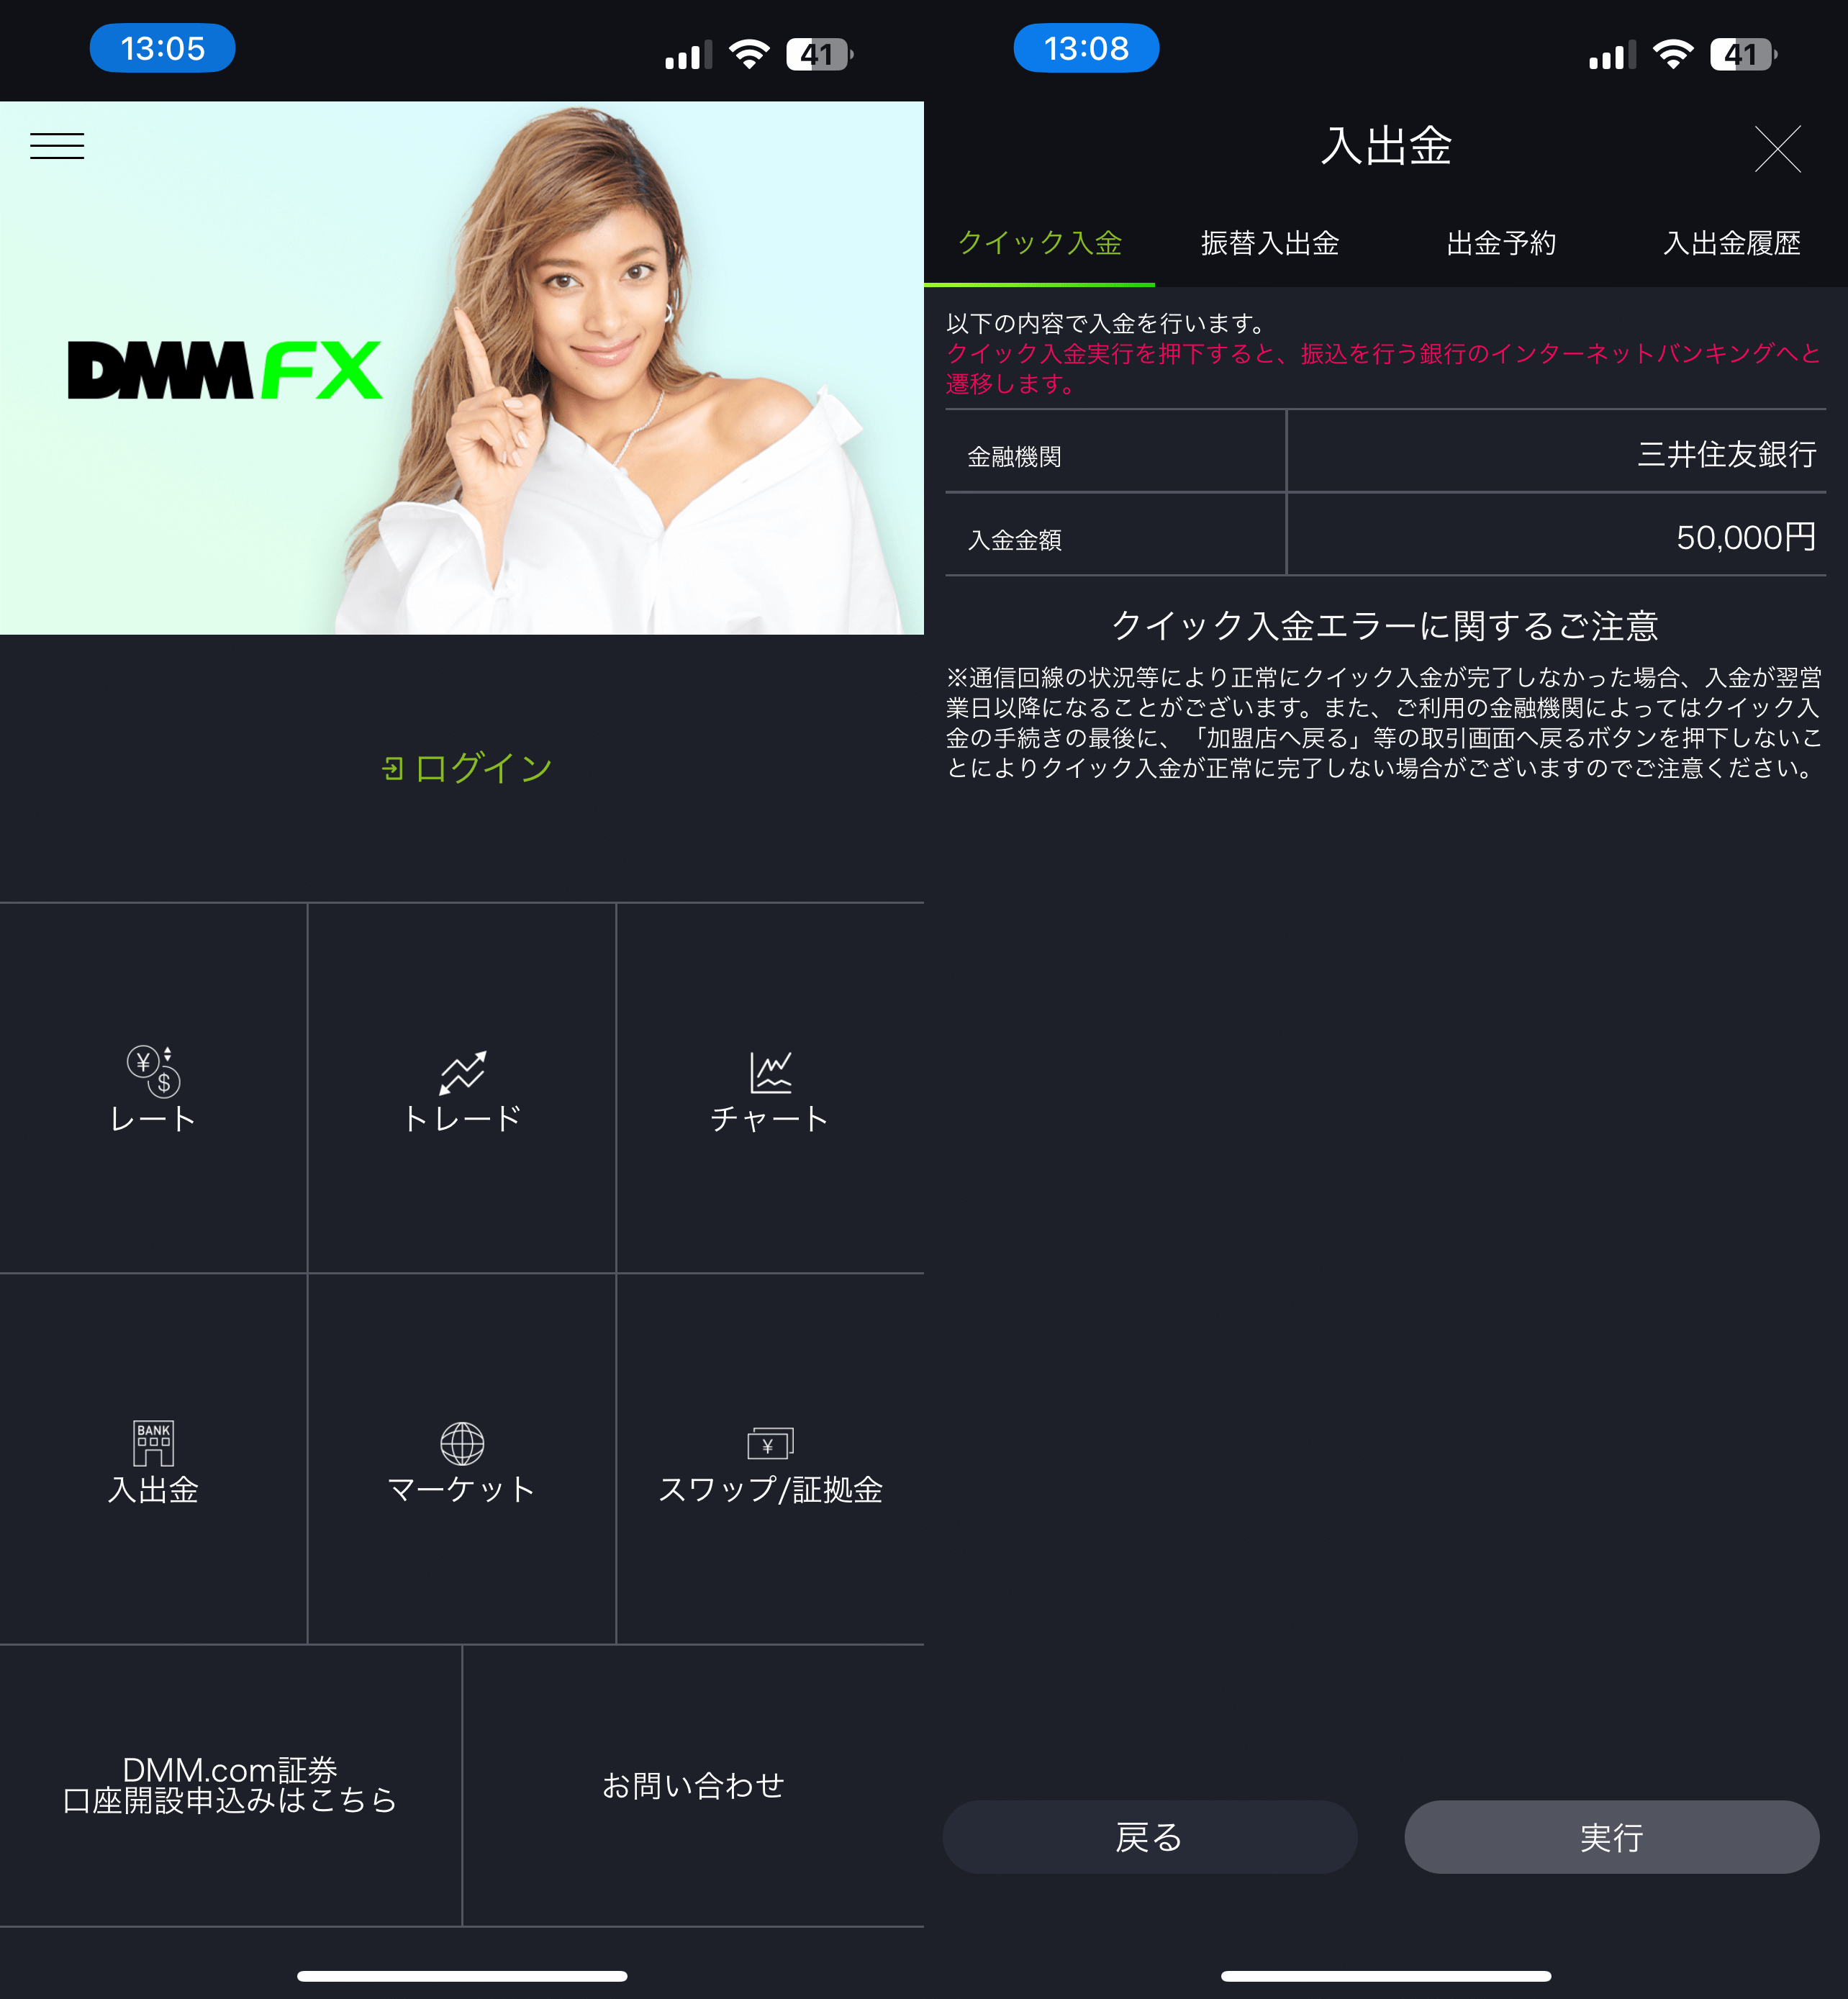 DMM FX のスマホアプリの画面